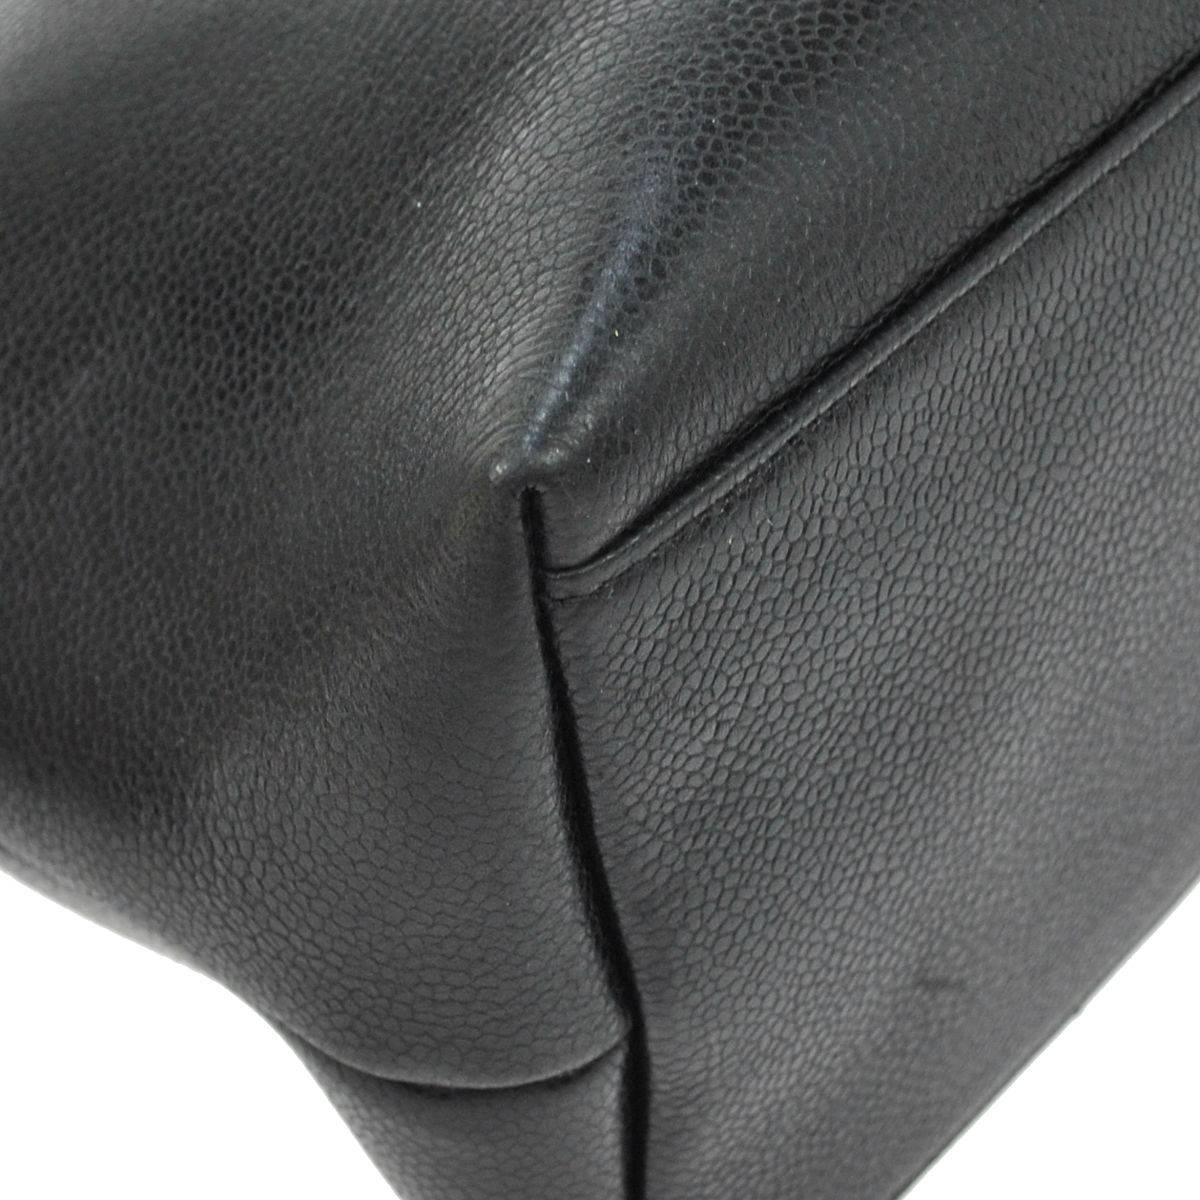 Chanel Black Caviar Leather Carryall Shopper Weekender Travel Shoulder Tote Bag 4